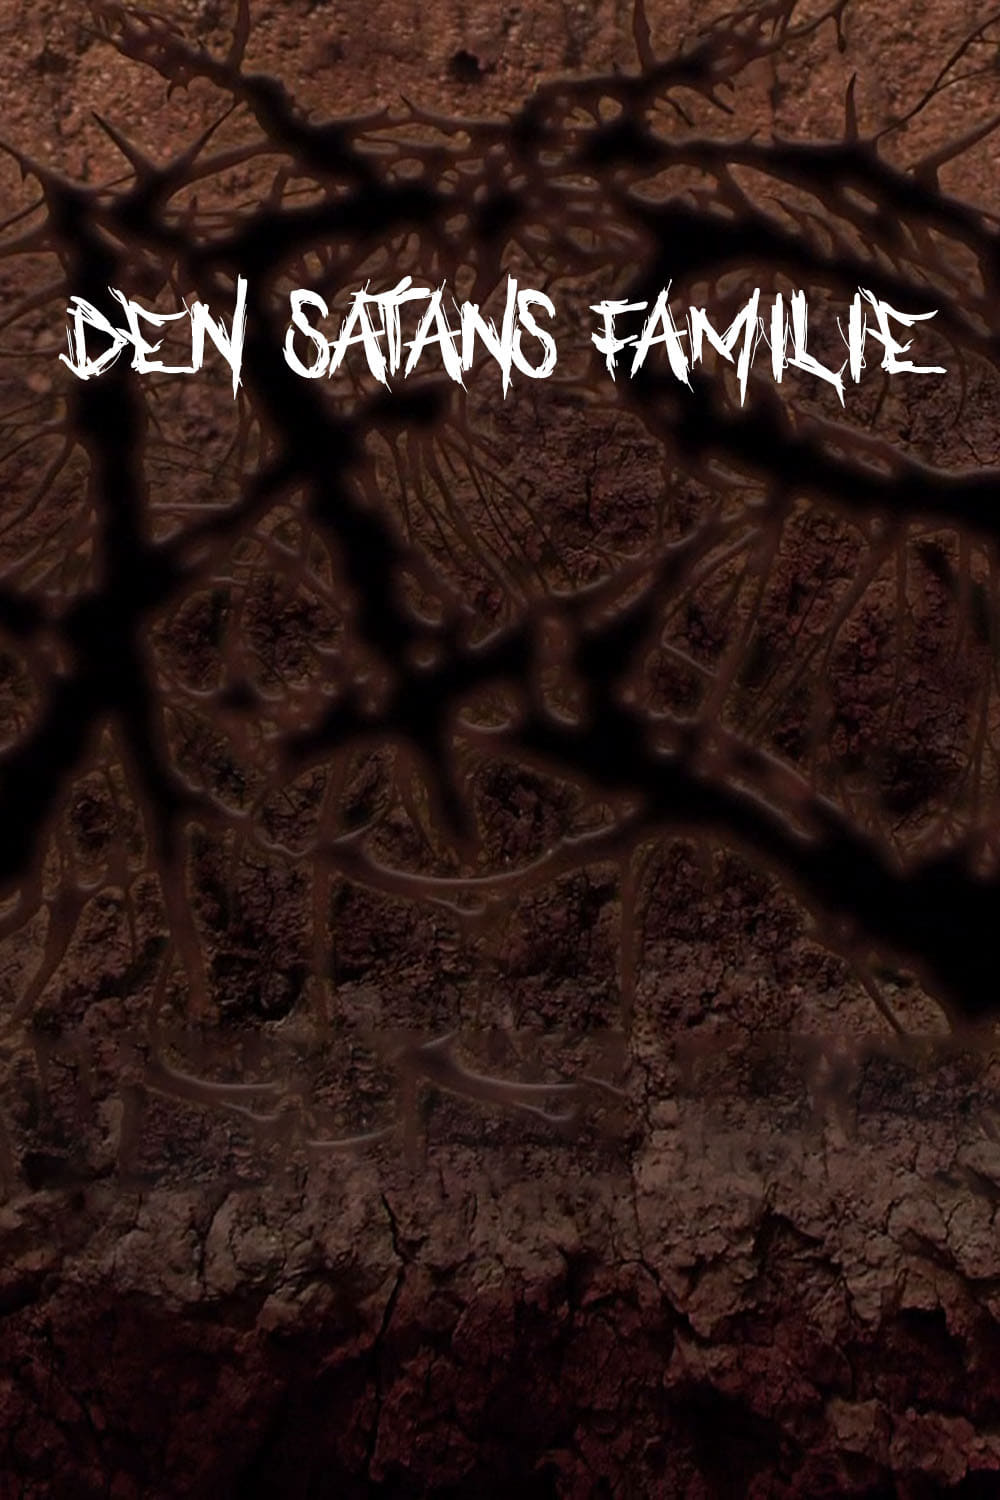 Den satans familie